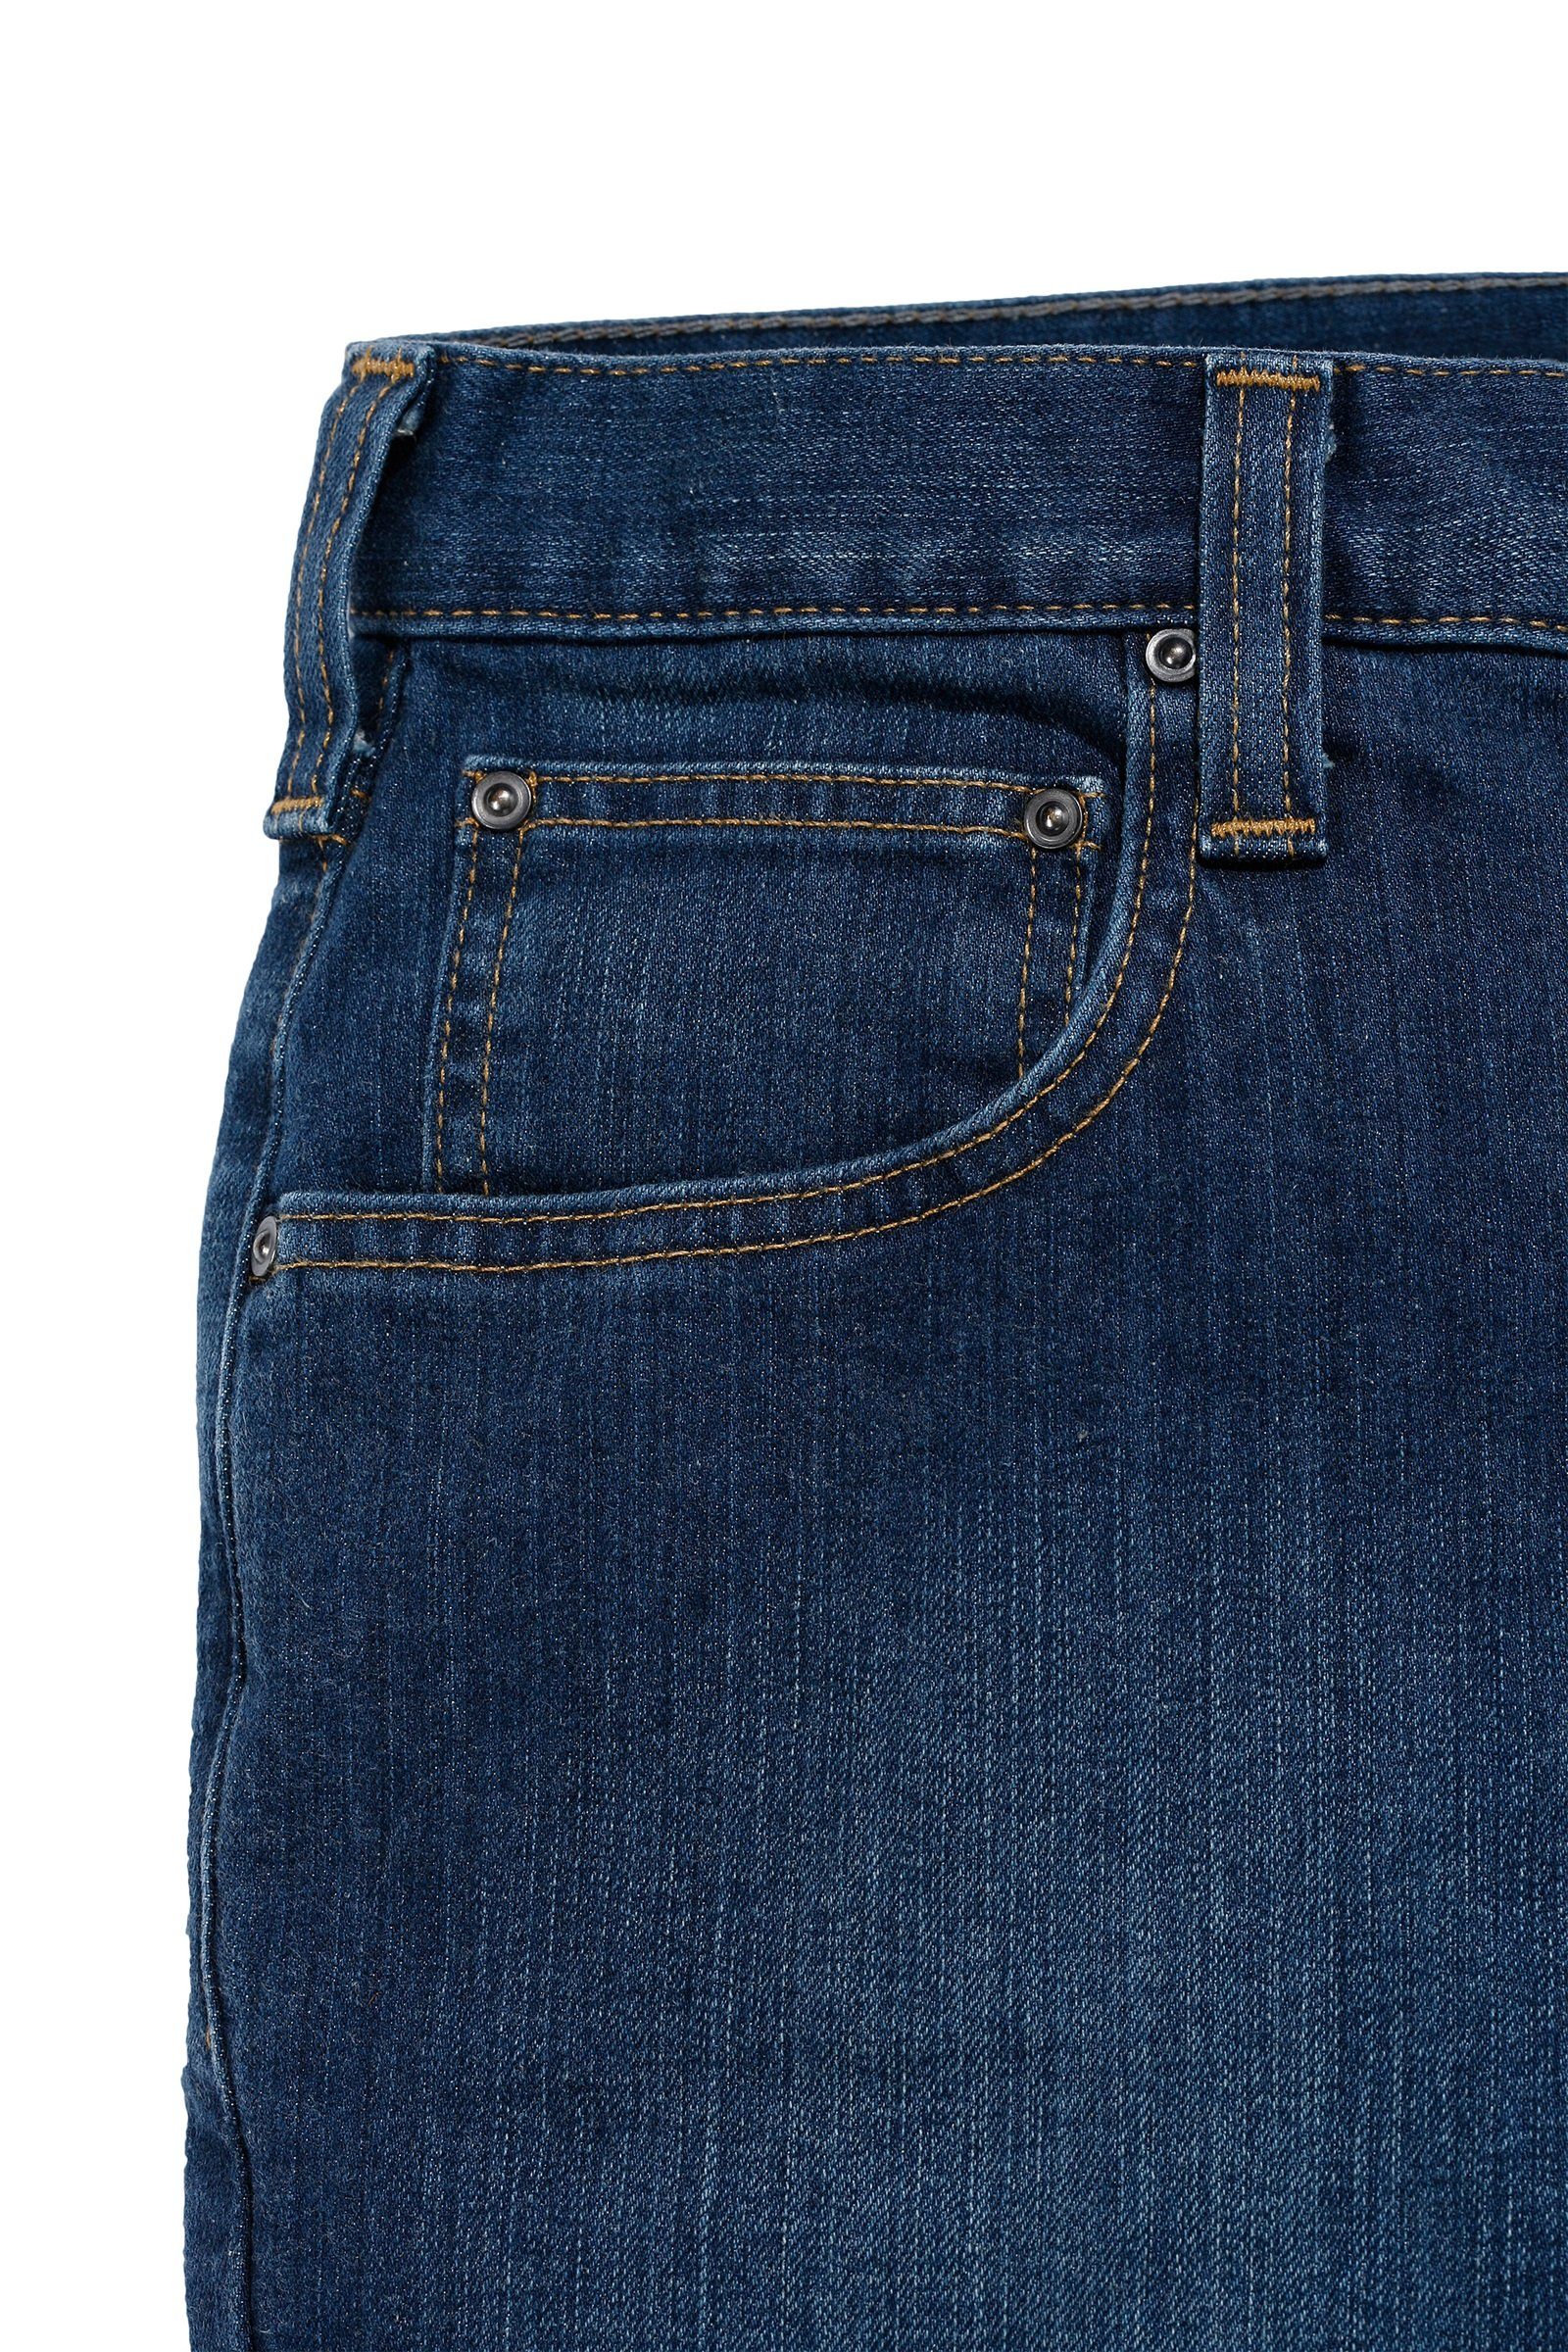 Flex Jeans Carhartt Straight Rugged Regular-fit-Jeans Relaxed Carhartt Herren coldwater